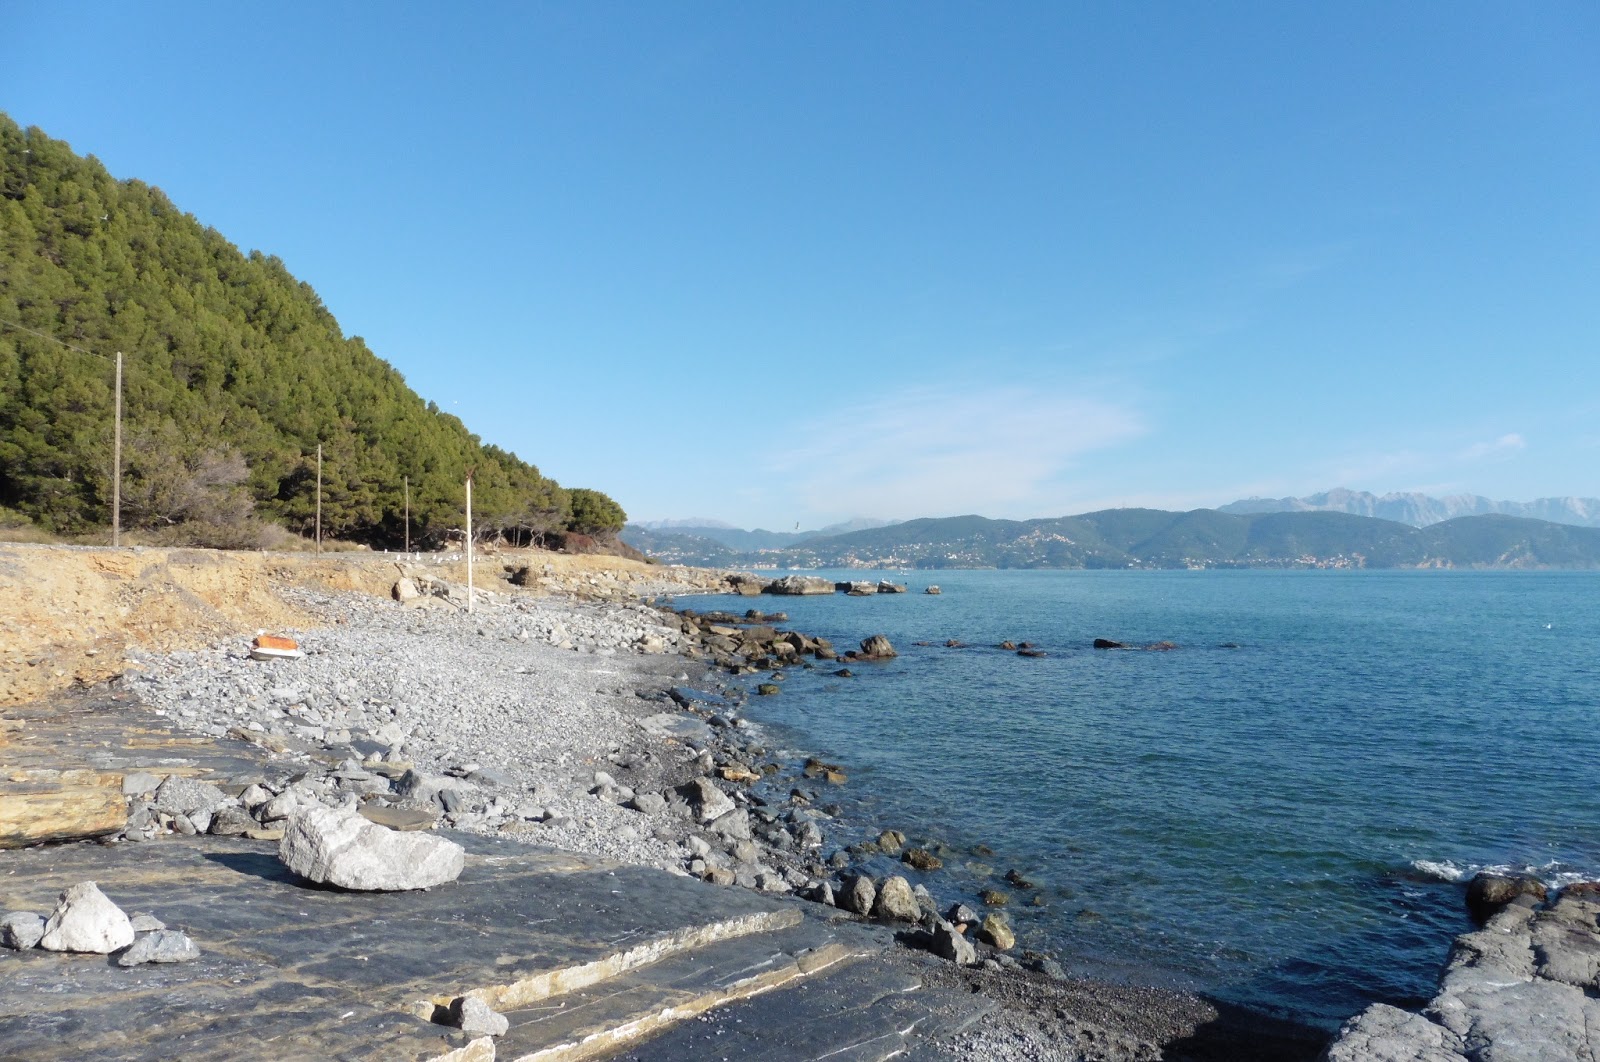 Fotografija Pozzale beach nahaja se v naravnem okolju